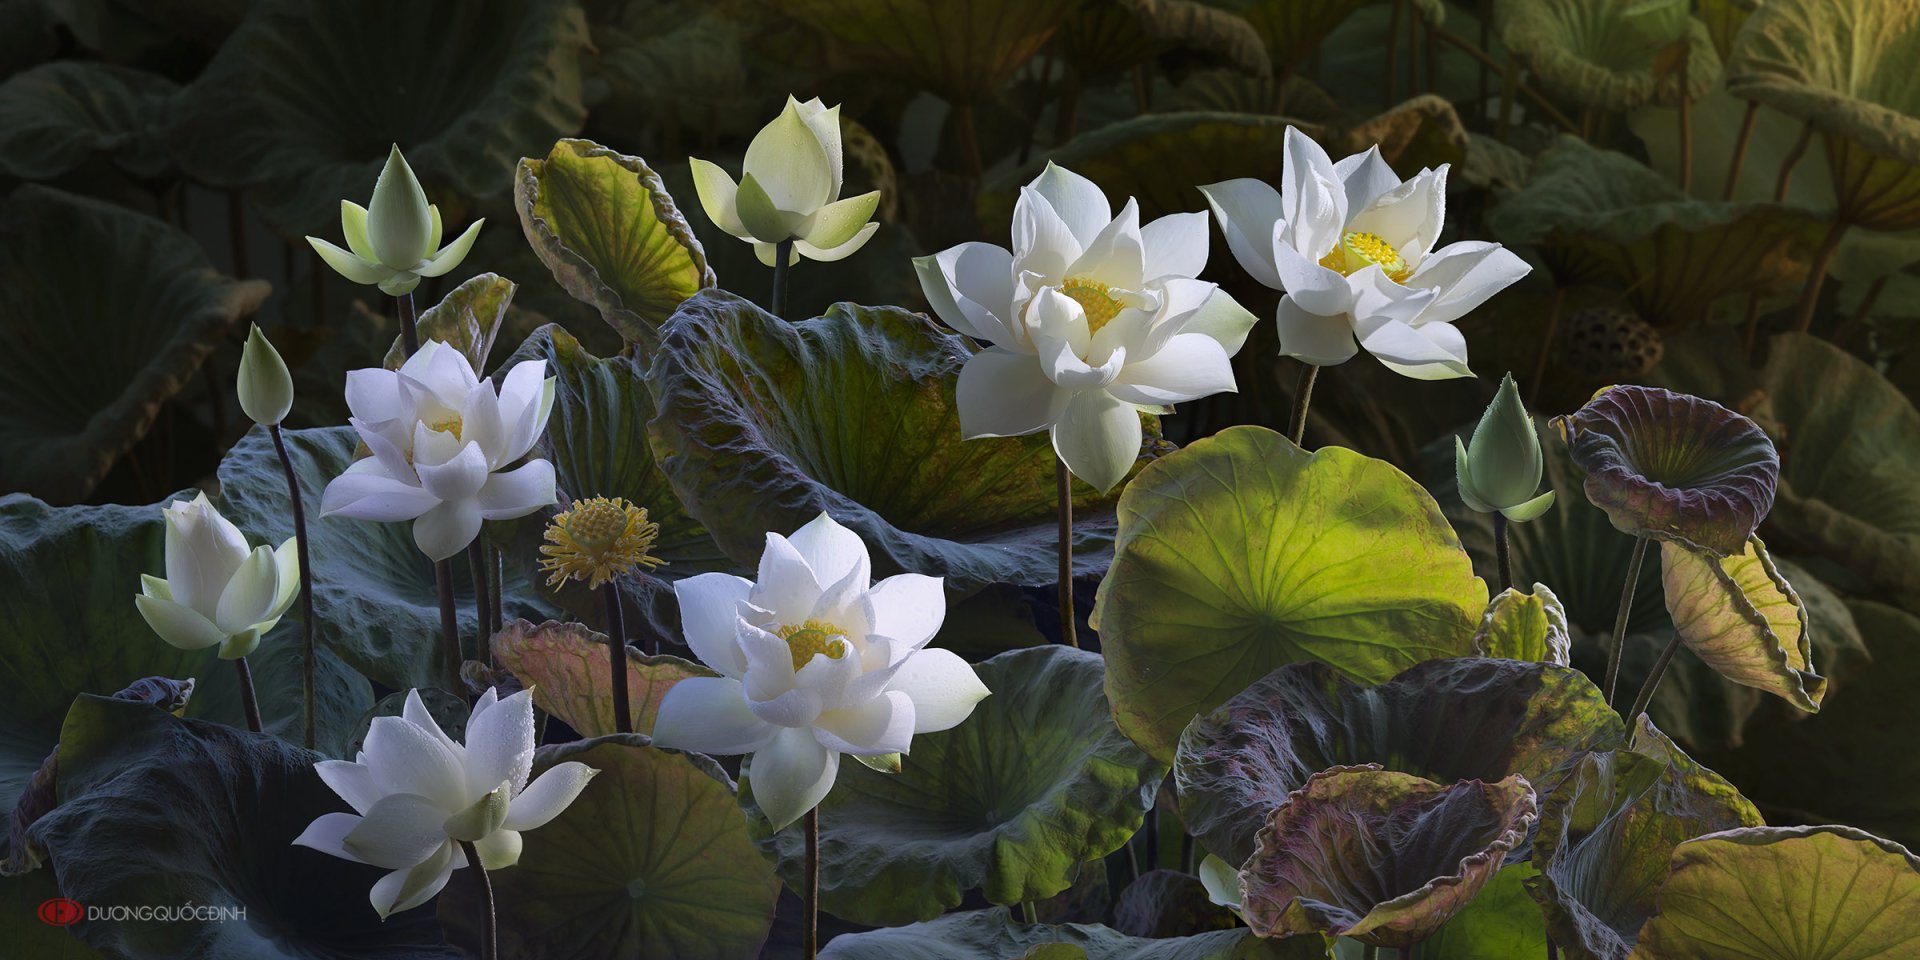 Hoa sen trắng thể hiện sự thanh khiết và giản dị, với màu trắng tinh khiết tượng trưng cho sự thoát khỏi cảnh đời đầy ồn ào. Hãy chiêm ngưỡng hình ảnh các bông hoa sen trắng rực rỡ và được chụp đầy chuyên nghiệp.